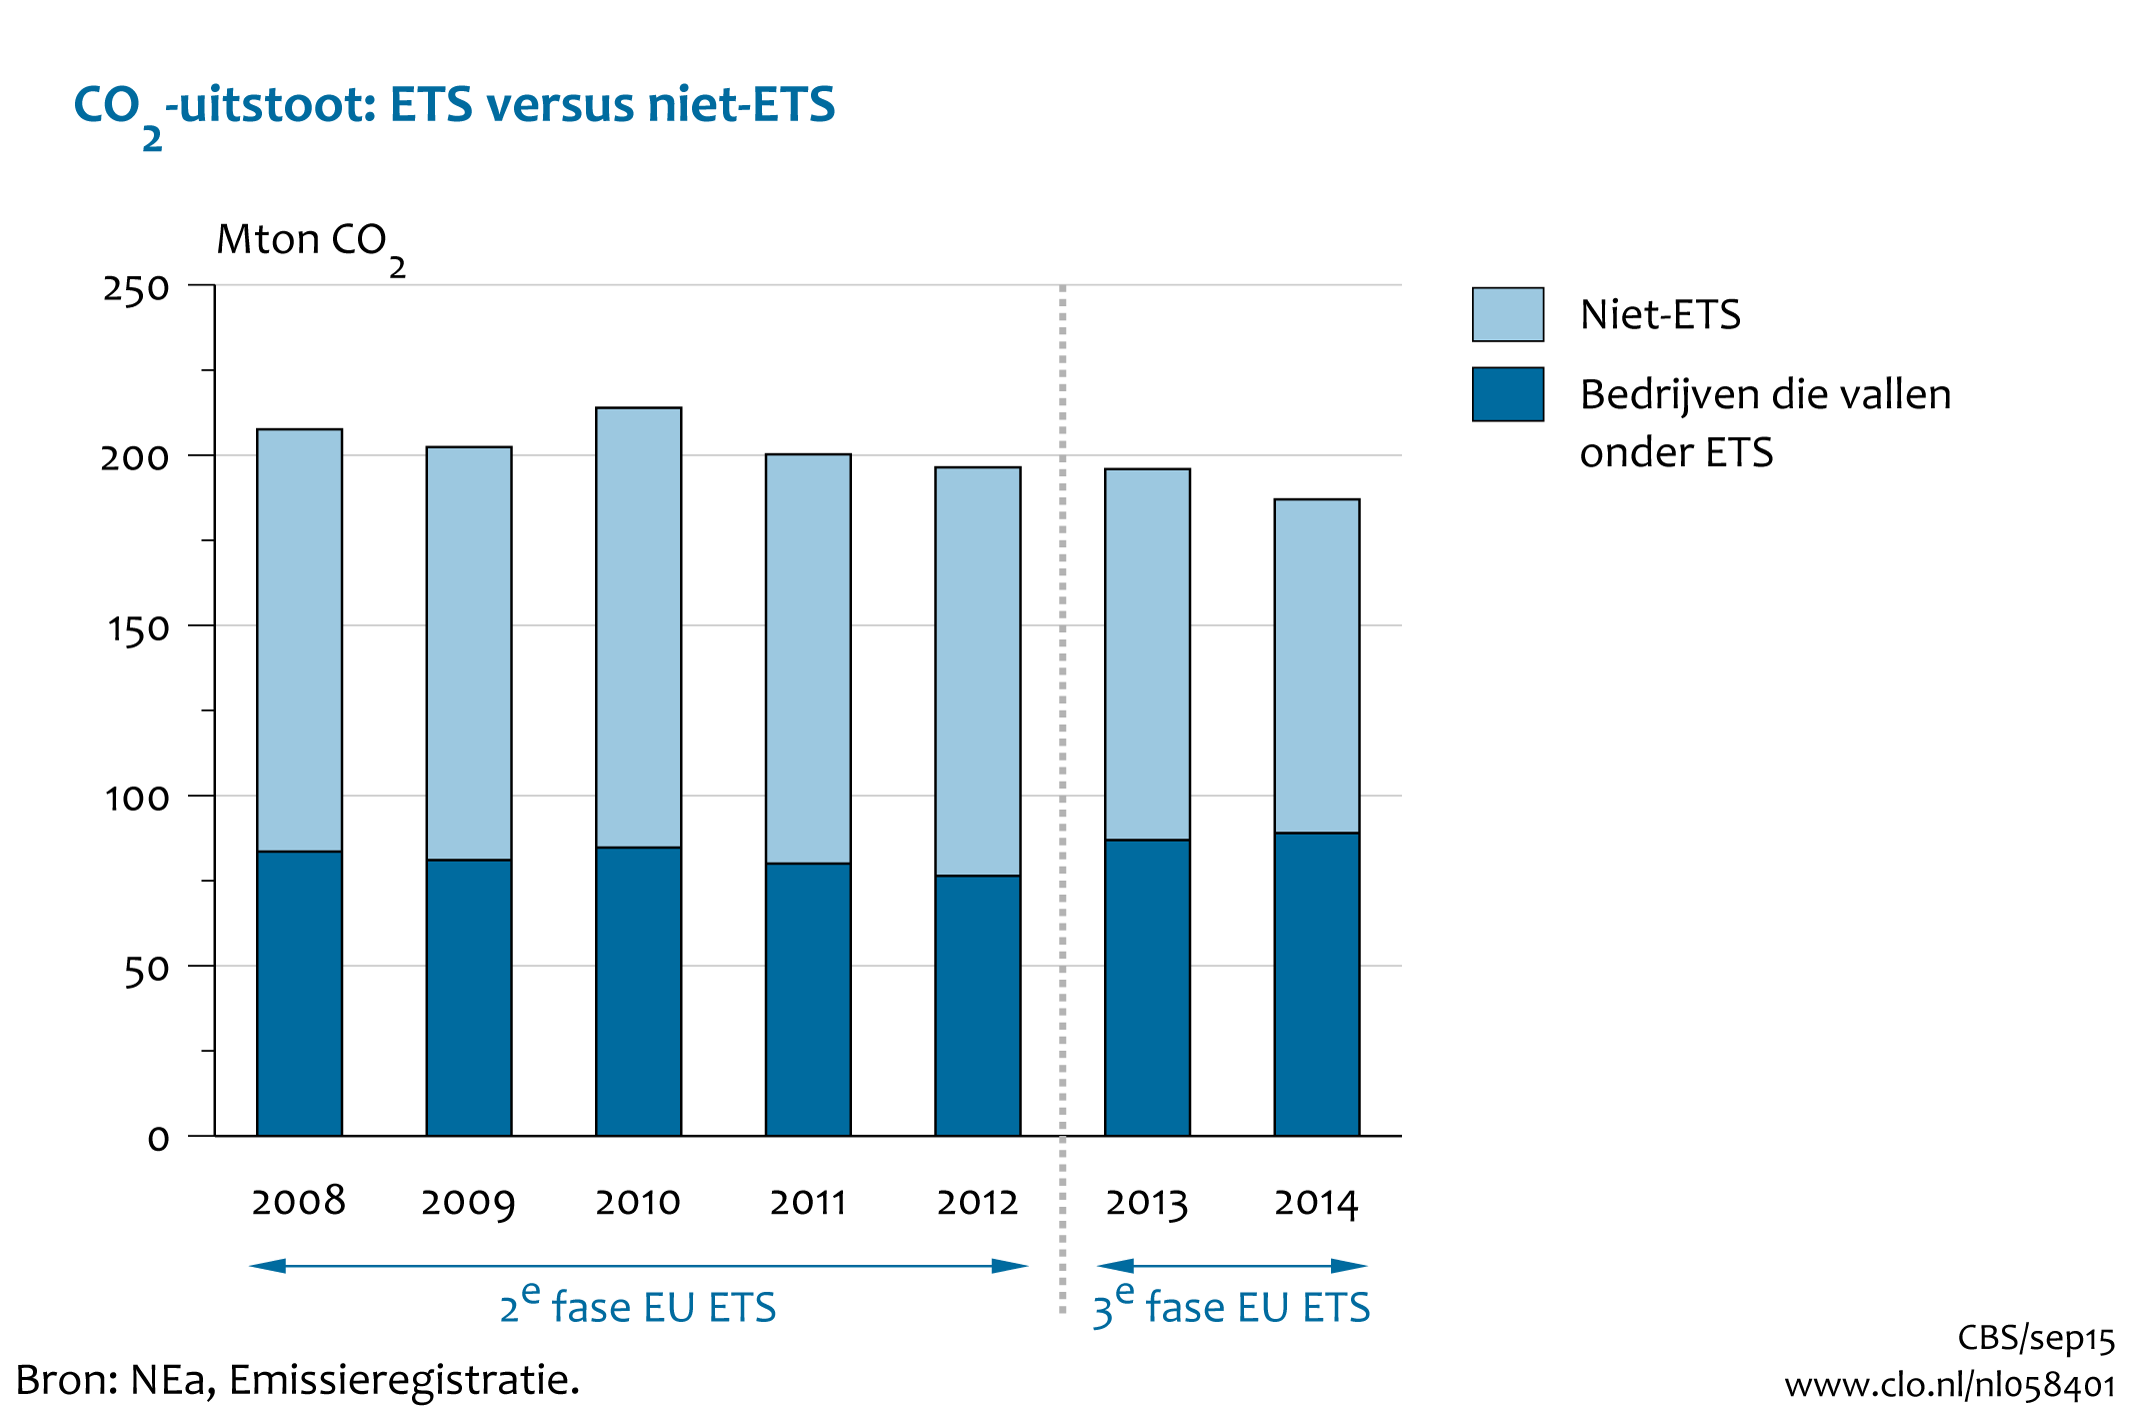 Figuur CO2-uitstoot ETS vs. niet-ETS. In de rest van de tekst wordt deze figuur uitgebreider uitgelegd.